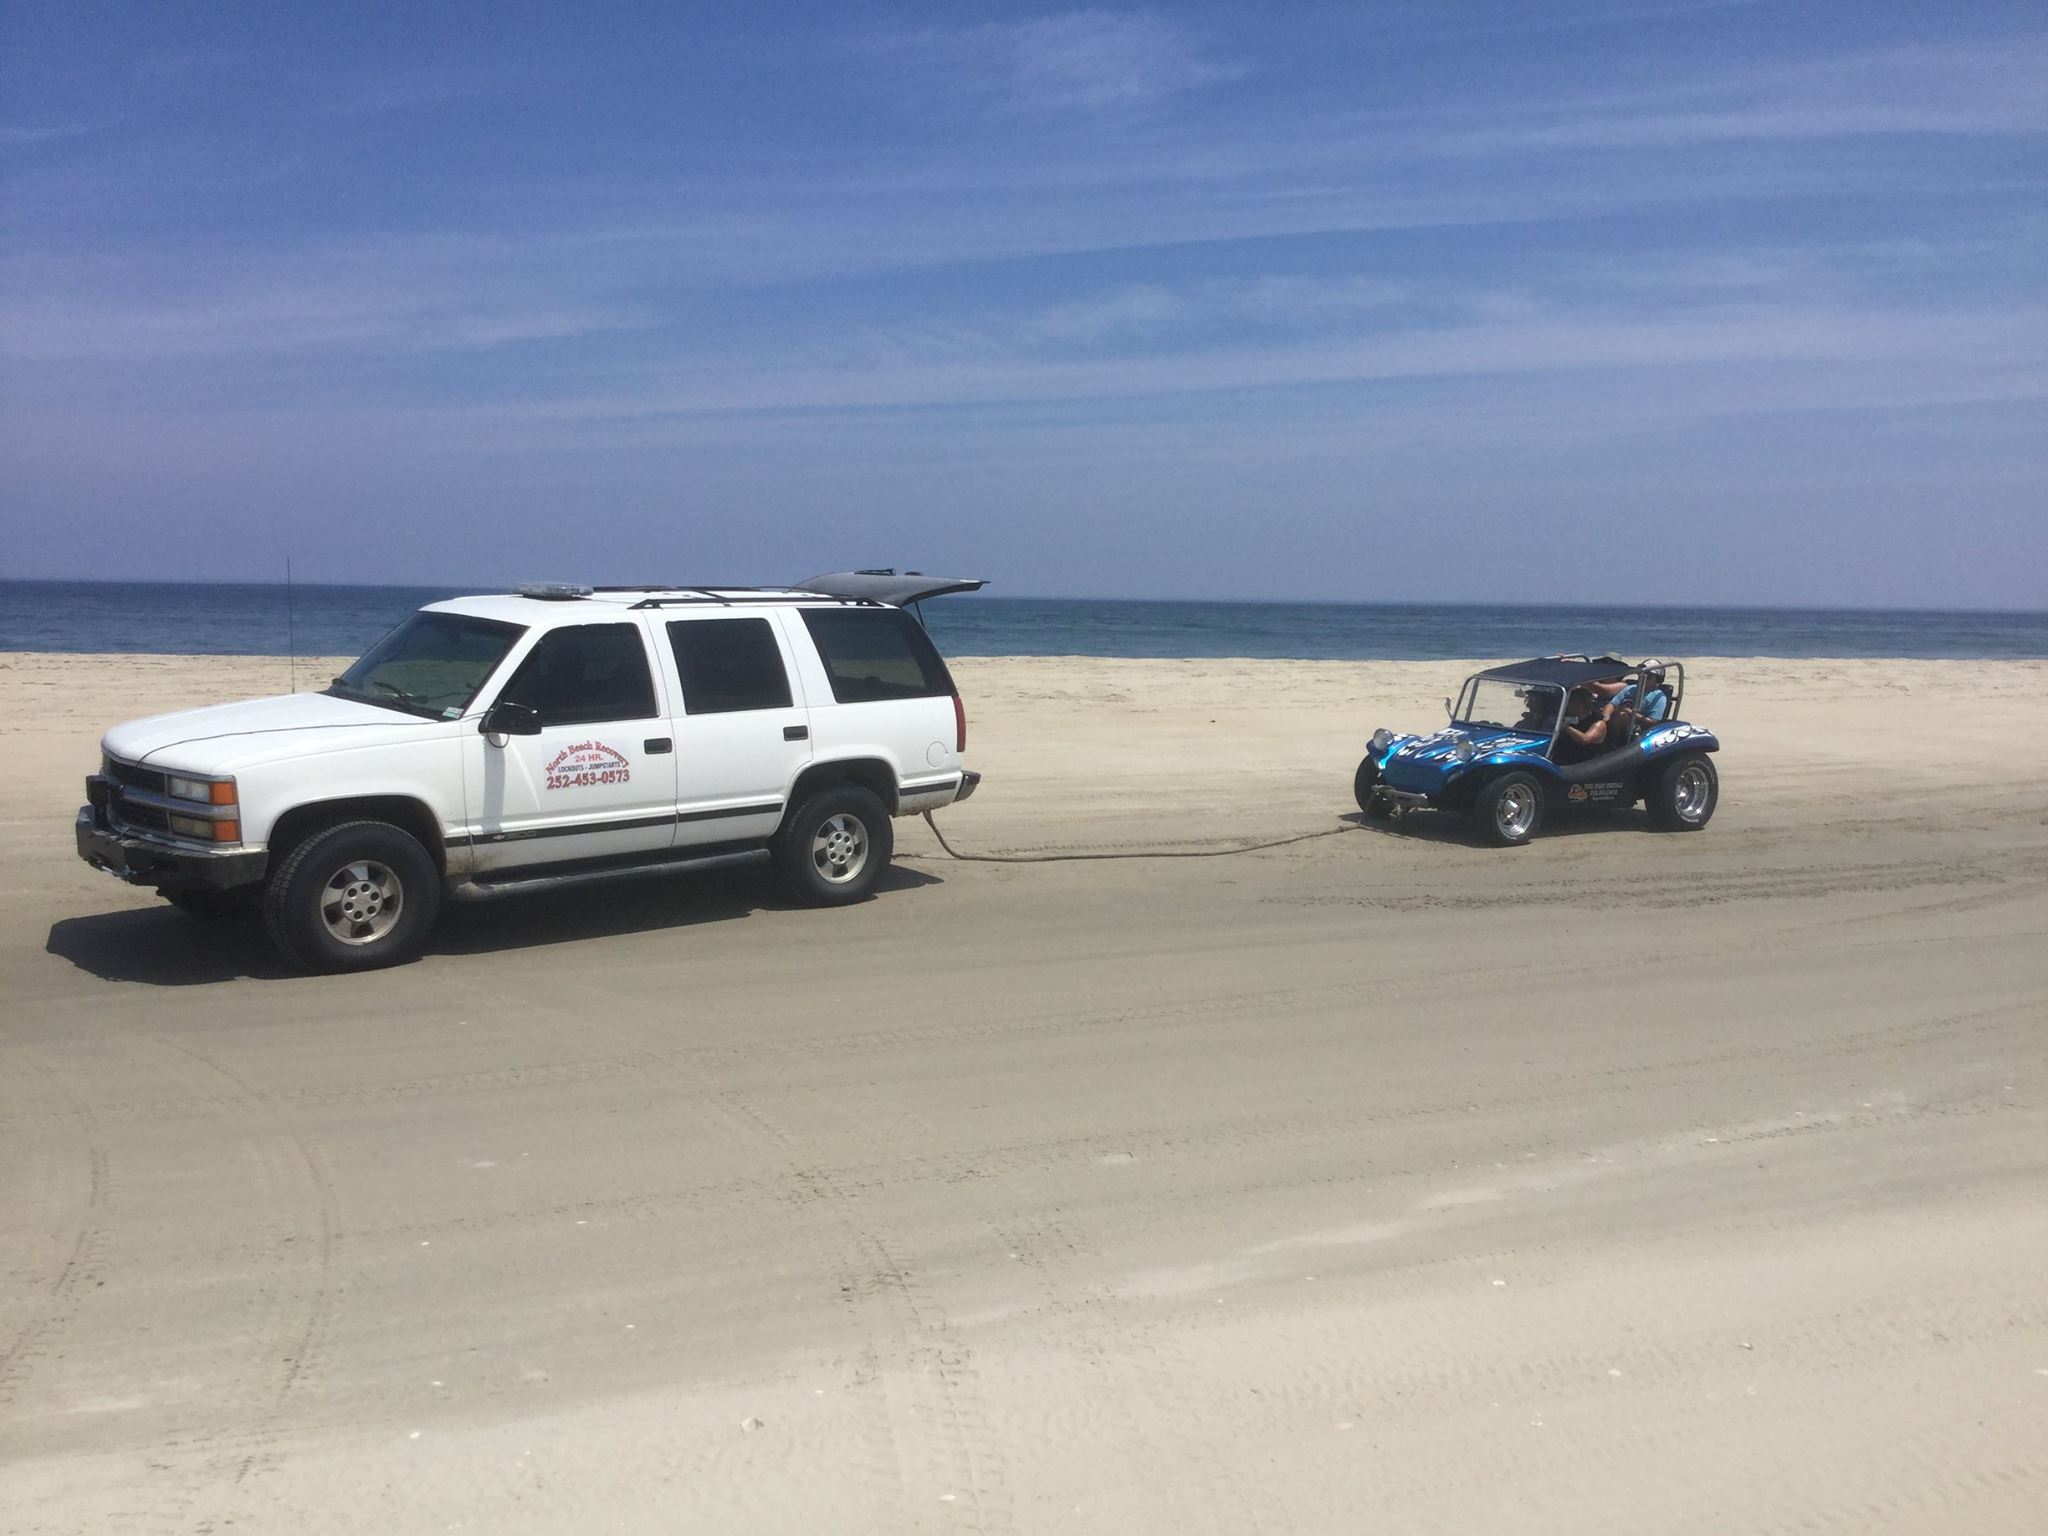 Beach Rescue service towing company stuck in sand Carova Corolla North Beach OBX